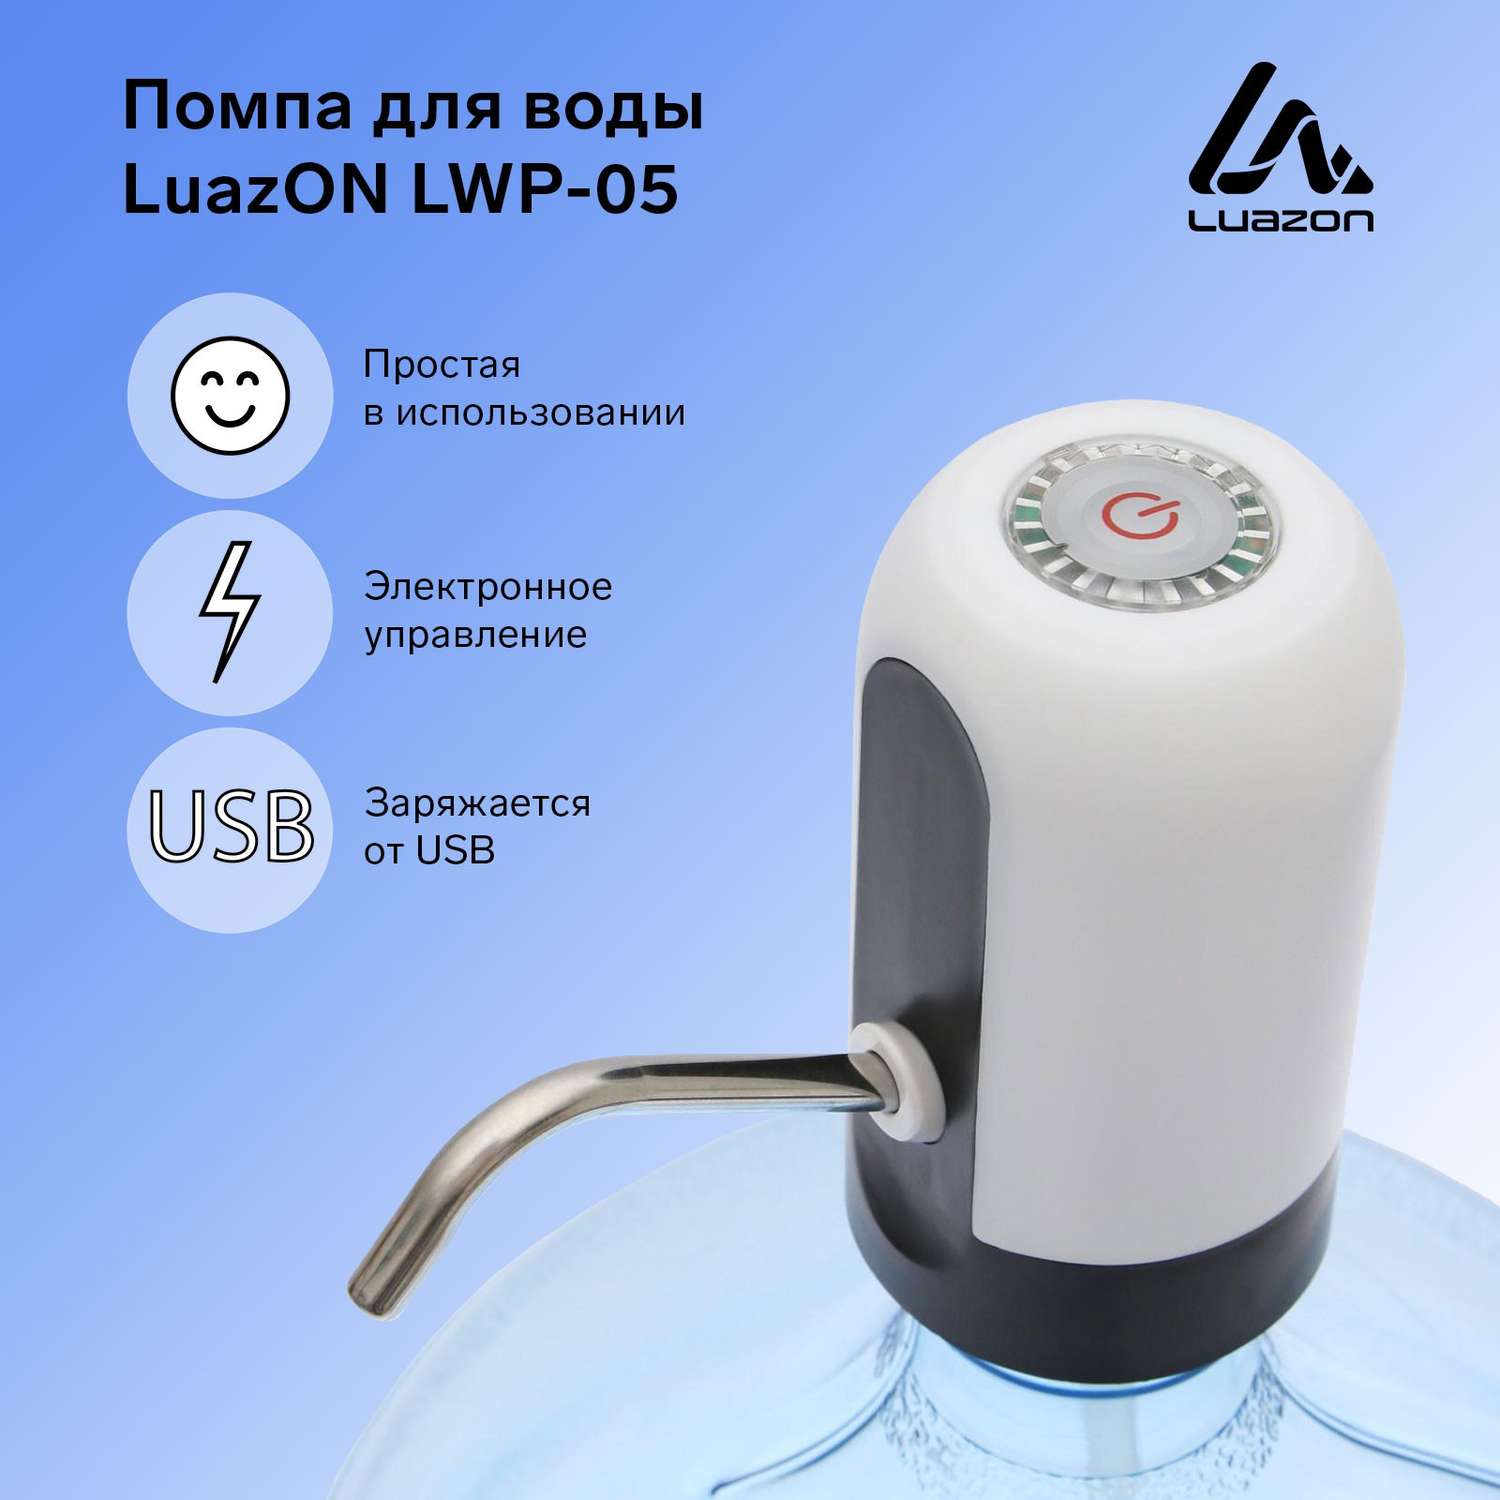 Помпа Luazon Home для воды LWP-05 электрическая 4 Вт 1.2 л/мин 1200 мАч от USB белая - фото 10